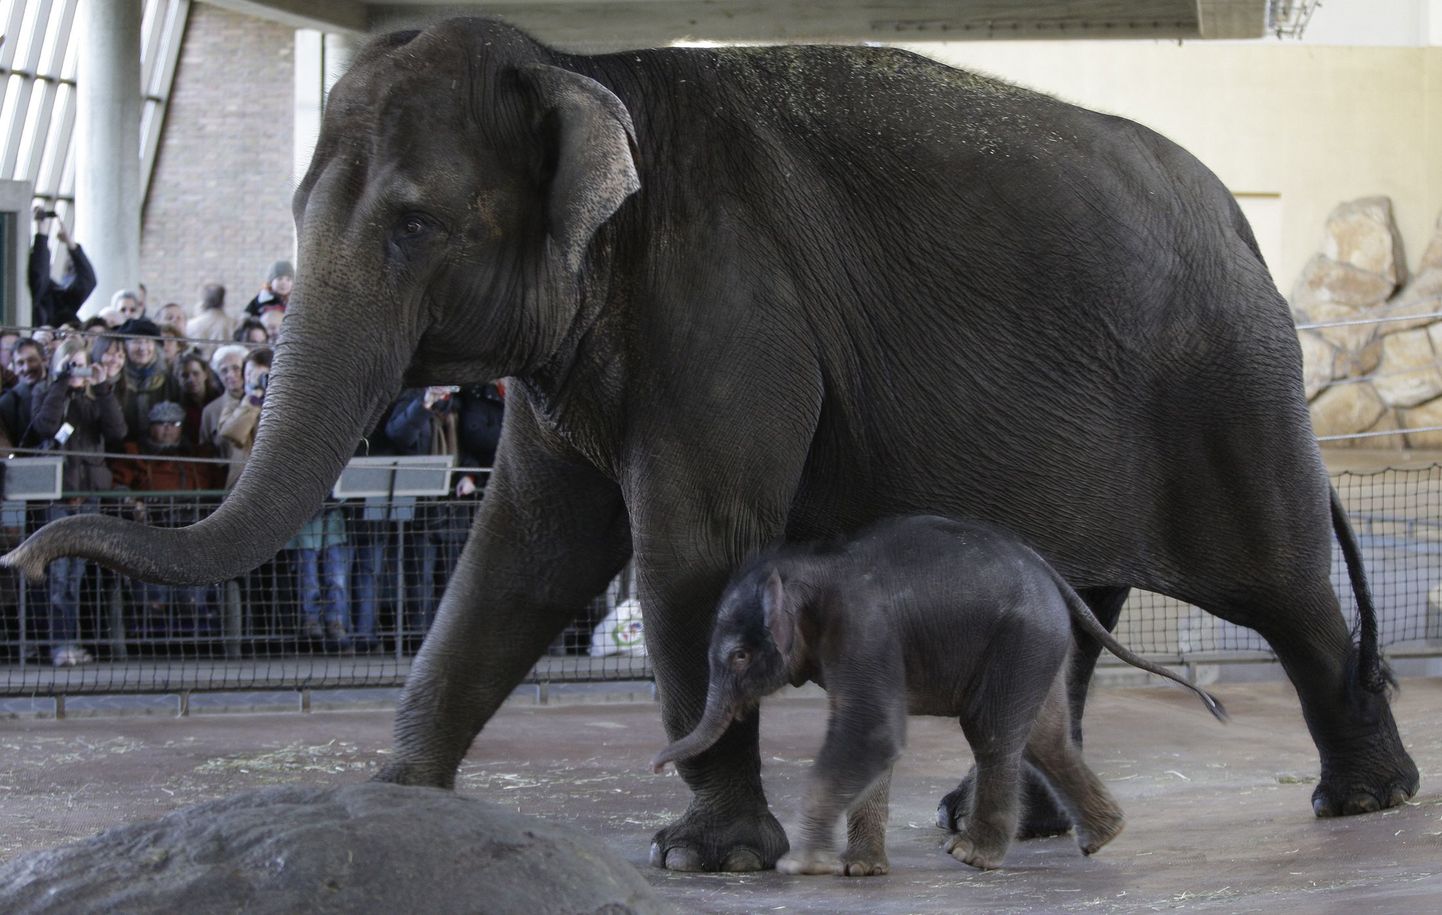 Pildil olev viiepäevane Ko Raya koos oma ema Pangphaga Berliini loomaaias. Elevanditüdruk sündis tänavu 15. märtsil.